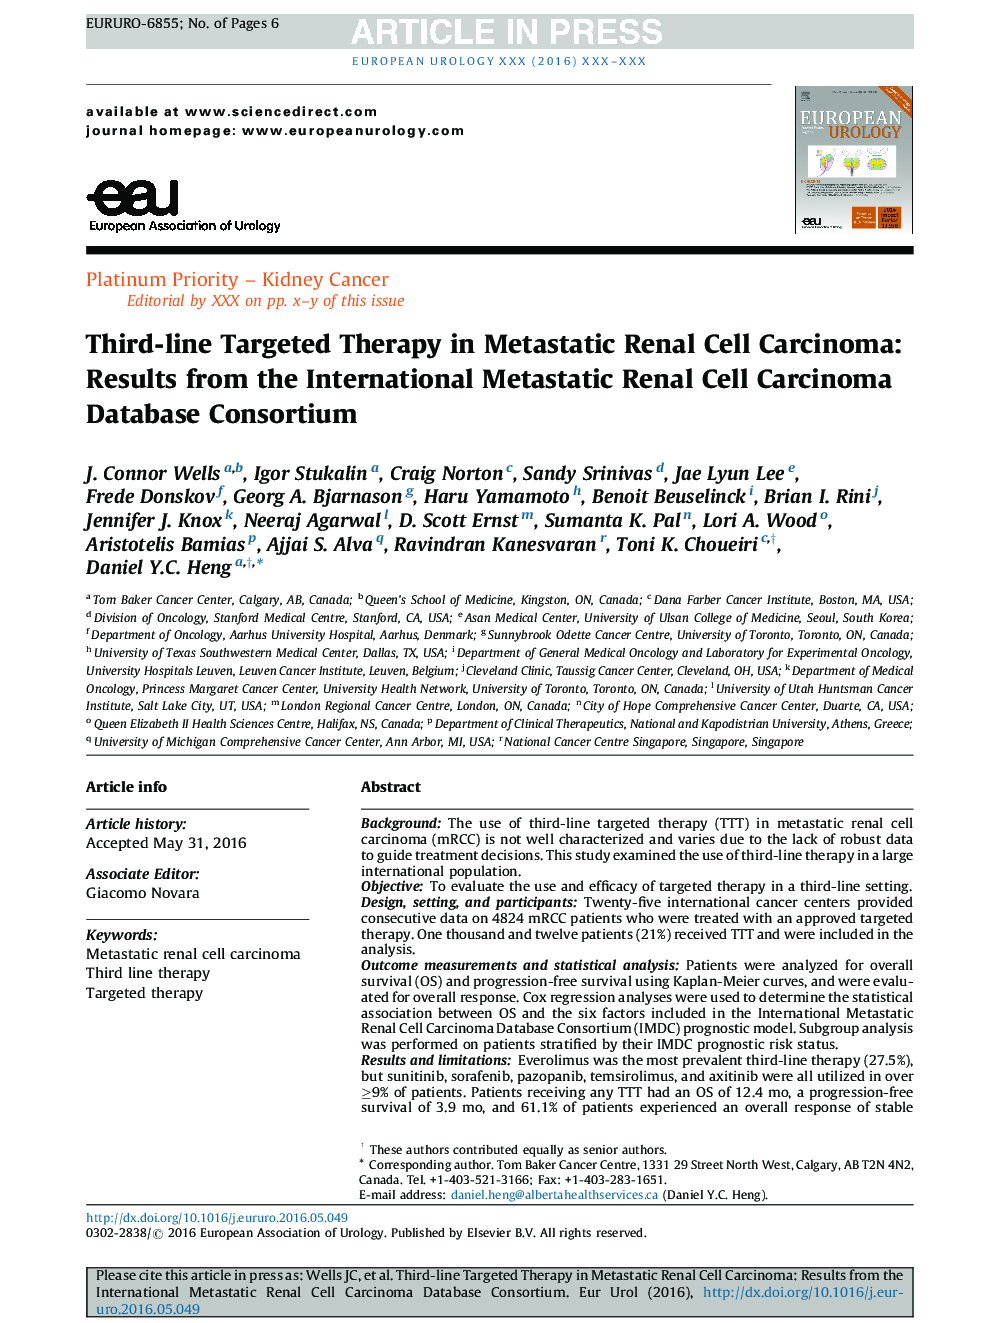 درمان سوم هدفمند در کارسینوم سلولهای متاستاتیک کلیه: نتایج کنسرسیوم پایگاه داده بین المللی متاستاتیک سلول های سرطانی کلیه 